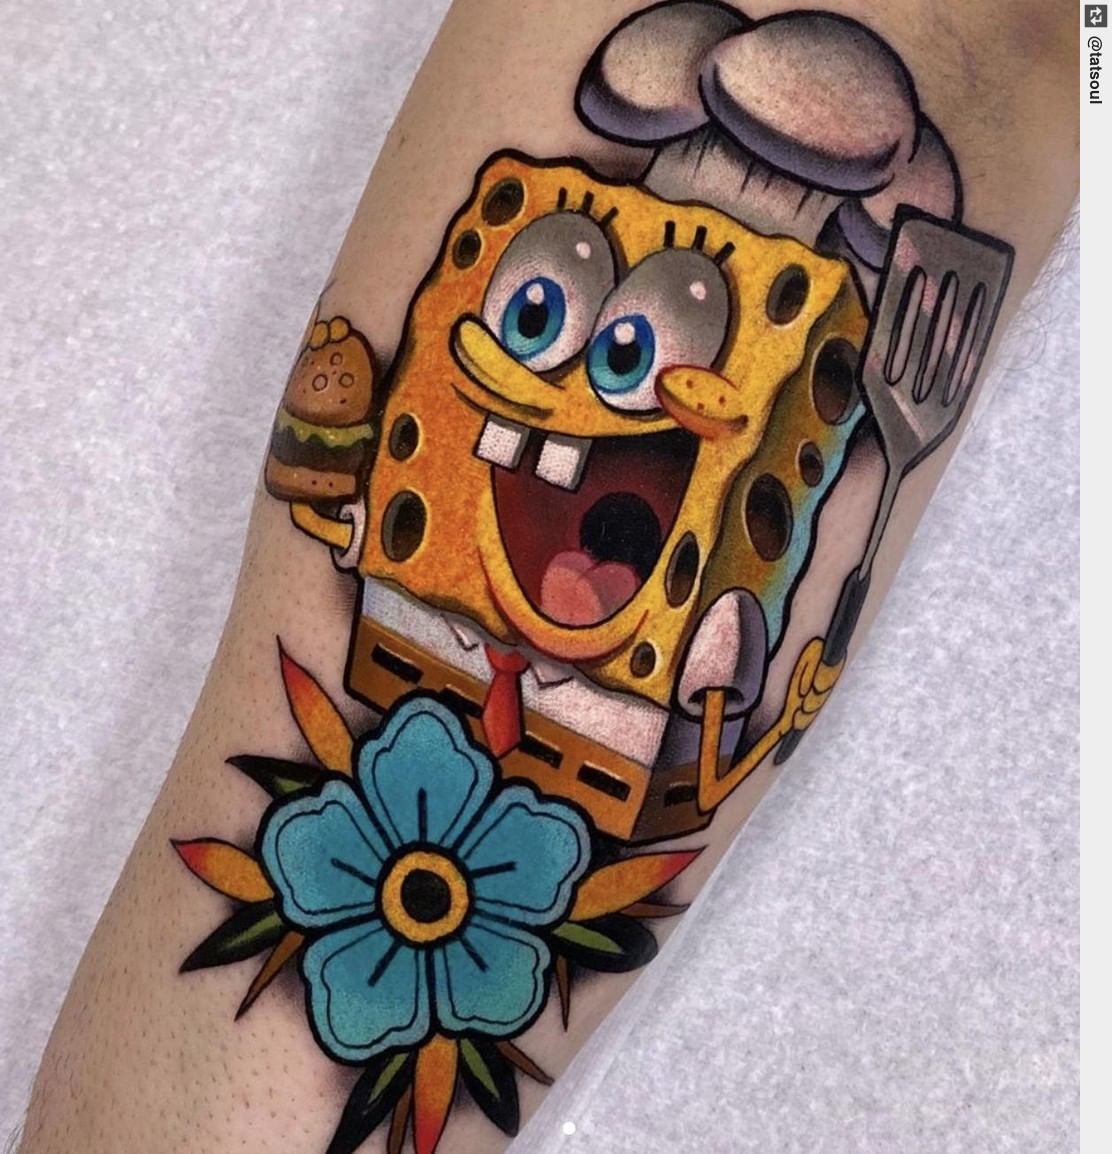 Everyone can appreciate a SpongeBob tattoo. 